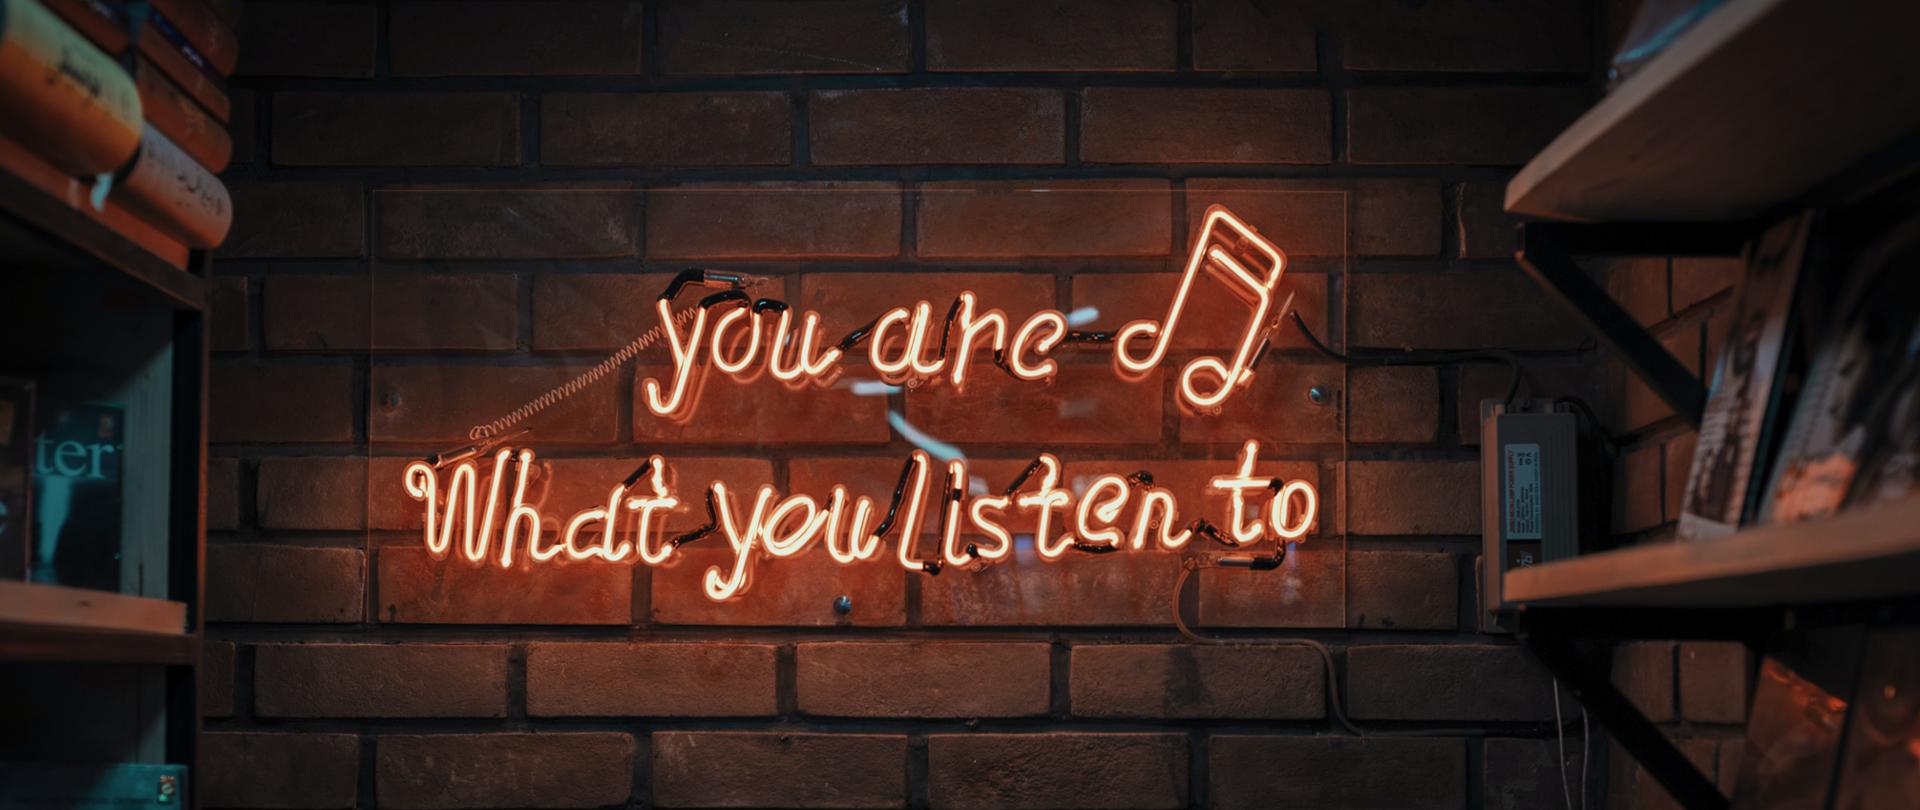 zdjęcie przedstawiające neon o treści "you are what you listen to" zawieszony na ścianie z cegieł, po obu stronach neonu znajdują się półki z książkami